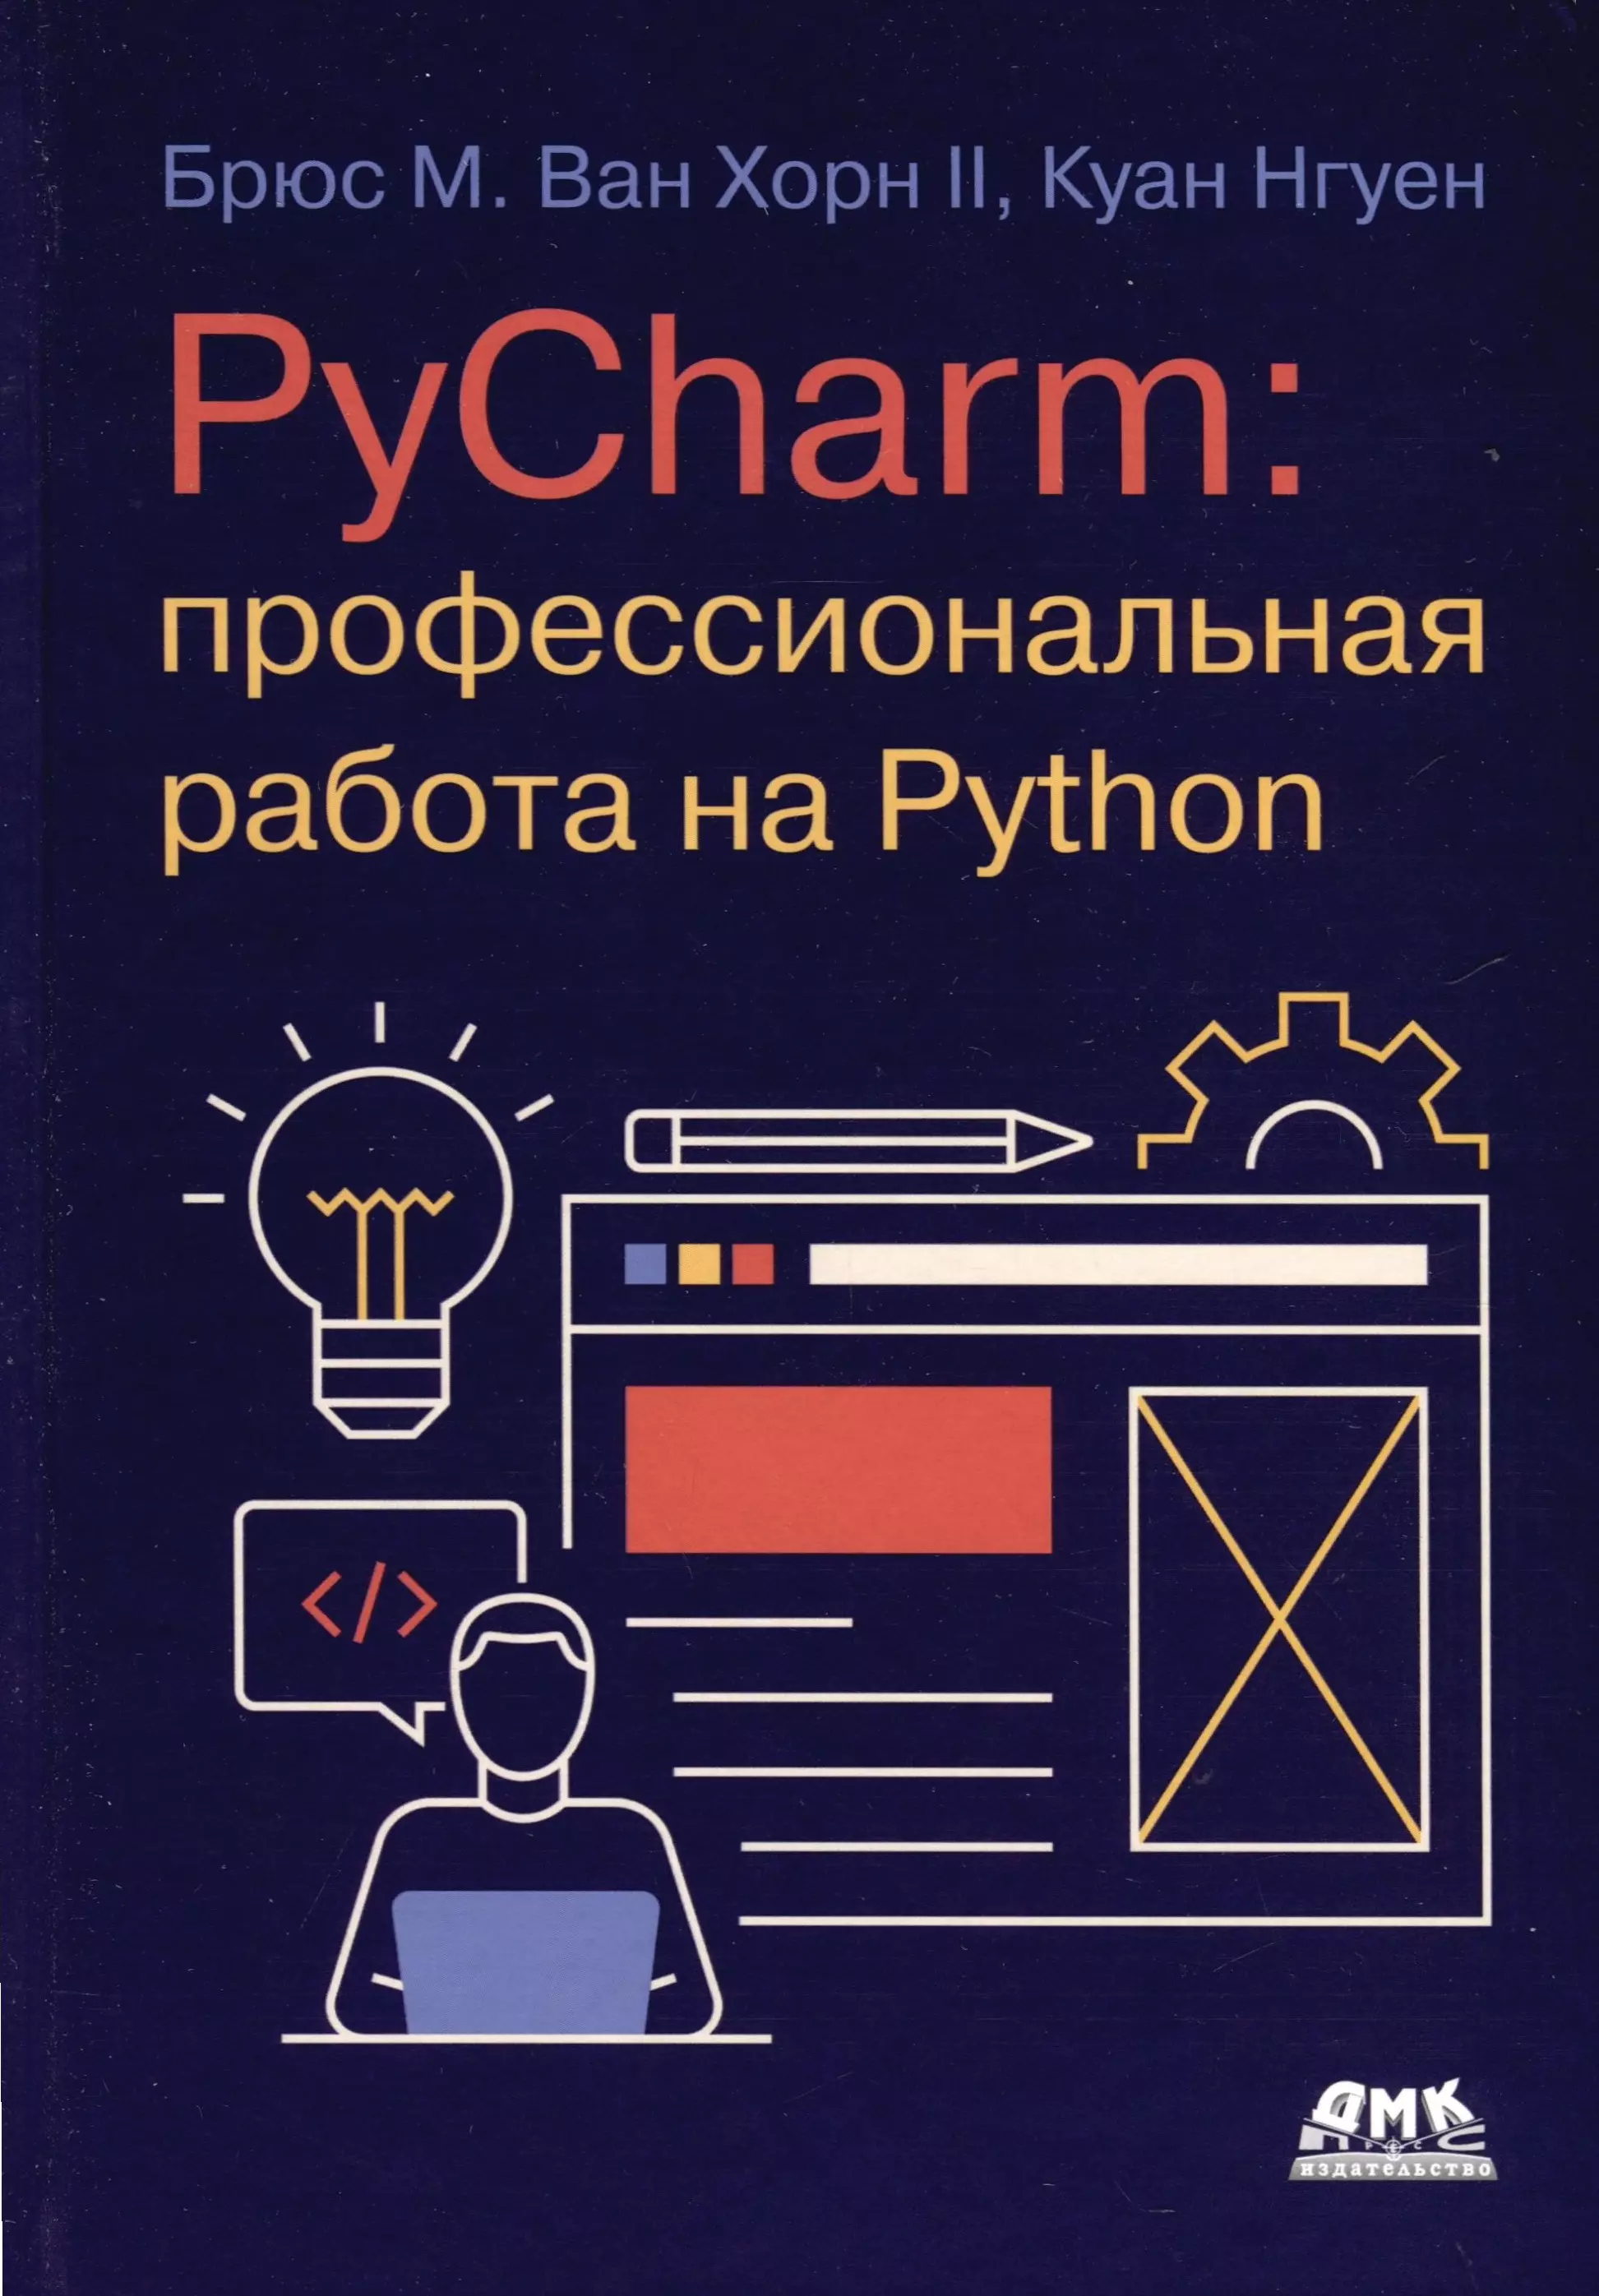 Нгуен Куан PYCHARM: профессиональная работа на PYTHON python для веб разработки